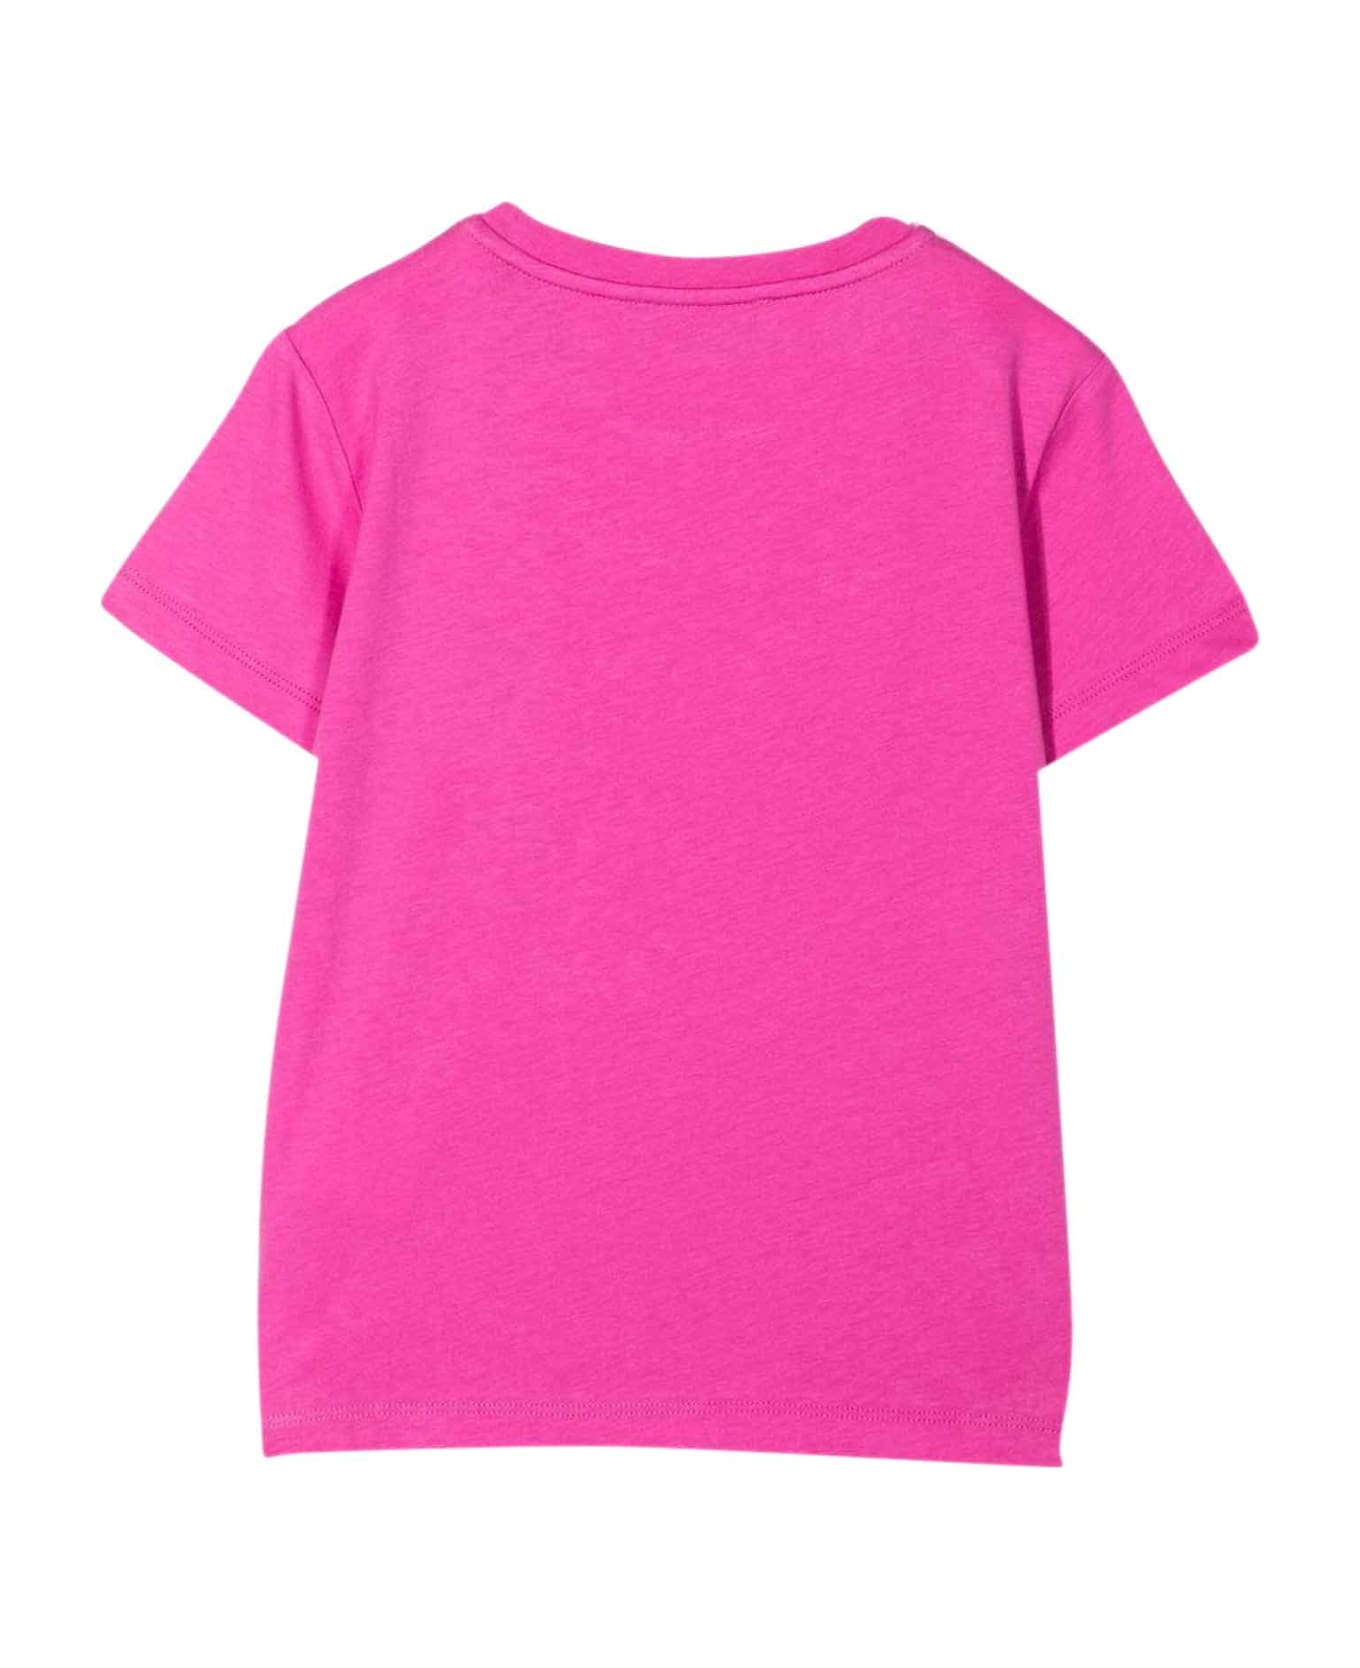 Versace Fuchsia T-shirt Girl Kids - Fucsia